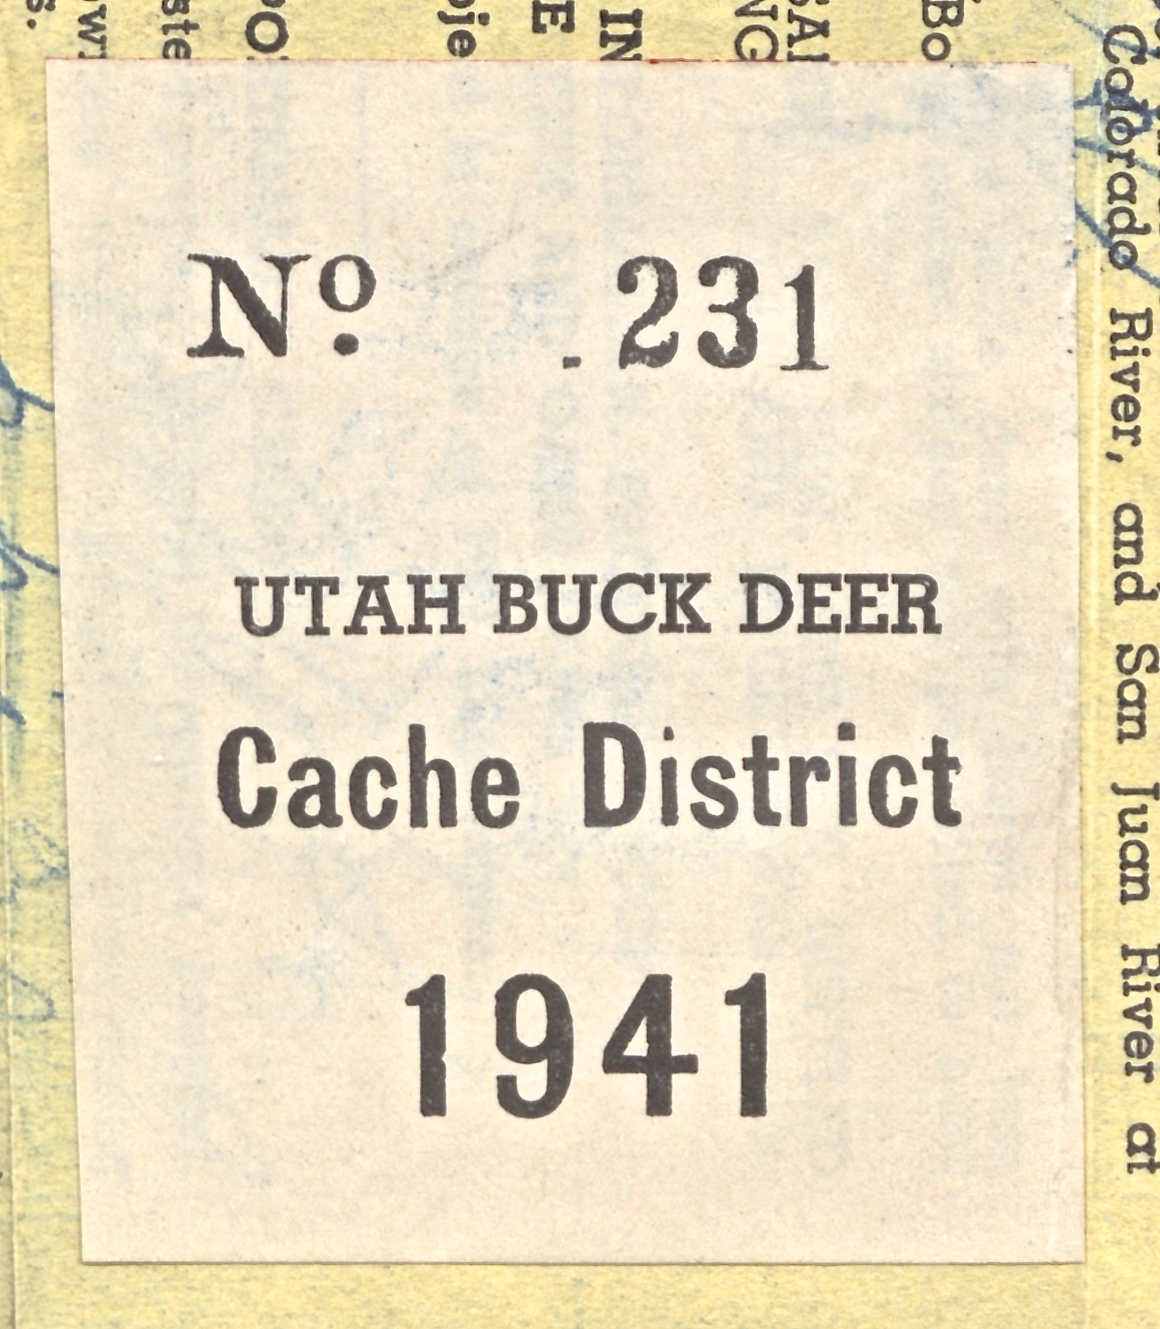 1941 Utah Buck Deer - Cache District